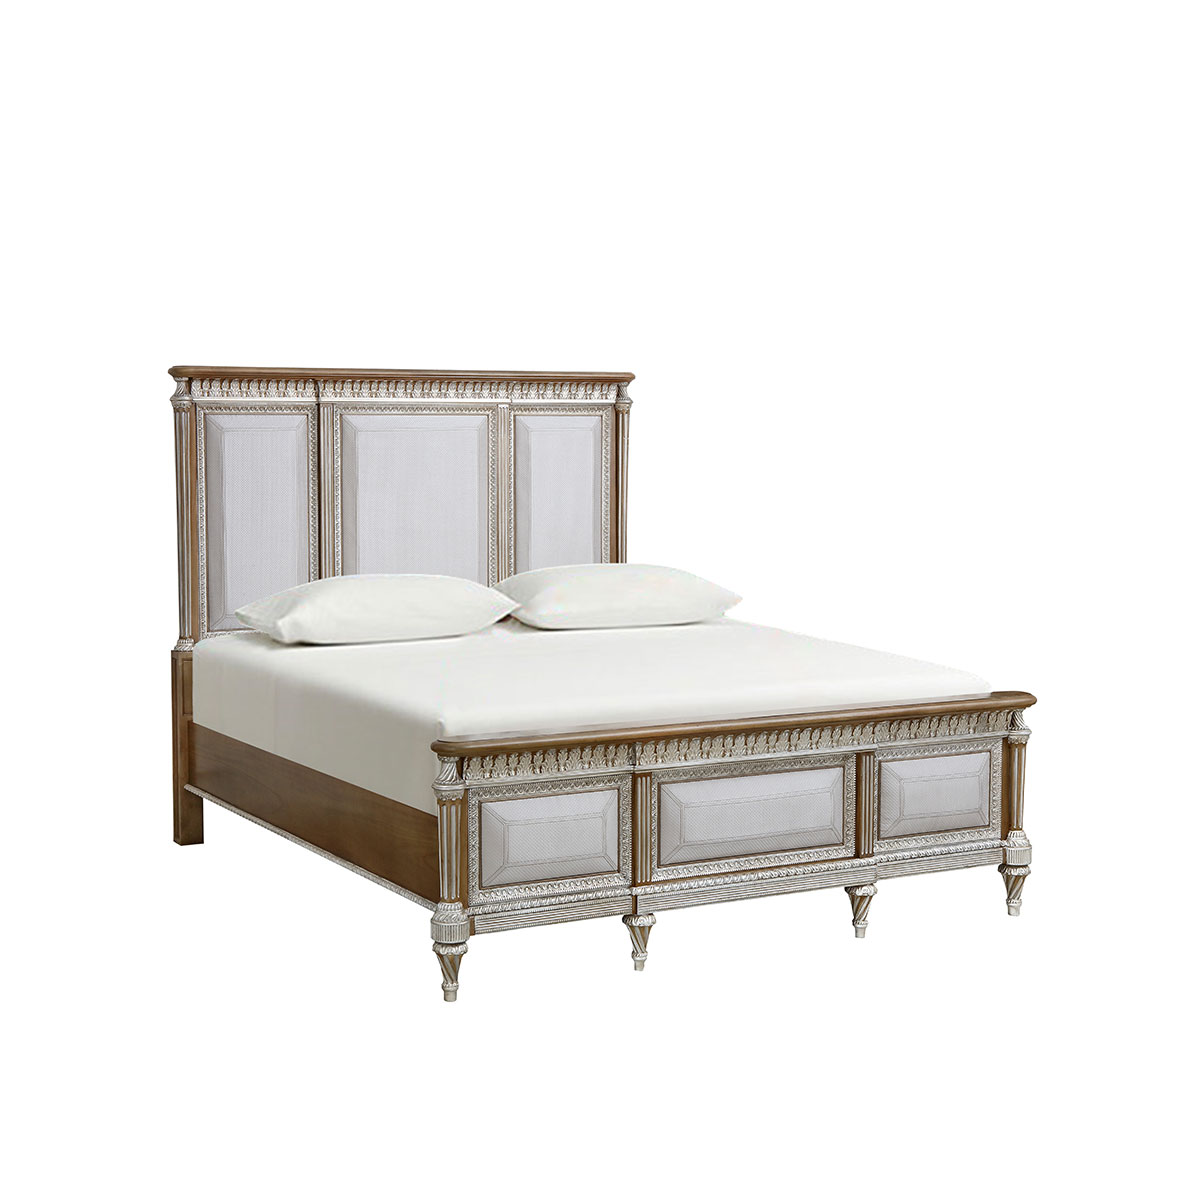 Windsor Castle C130 upholstered bed (low bed foot)